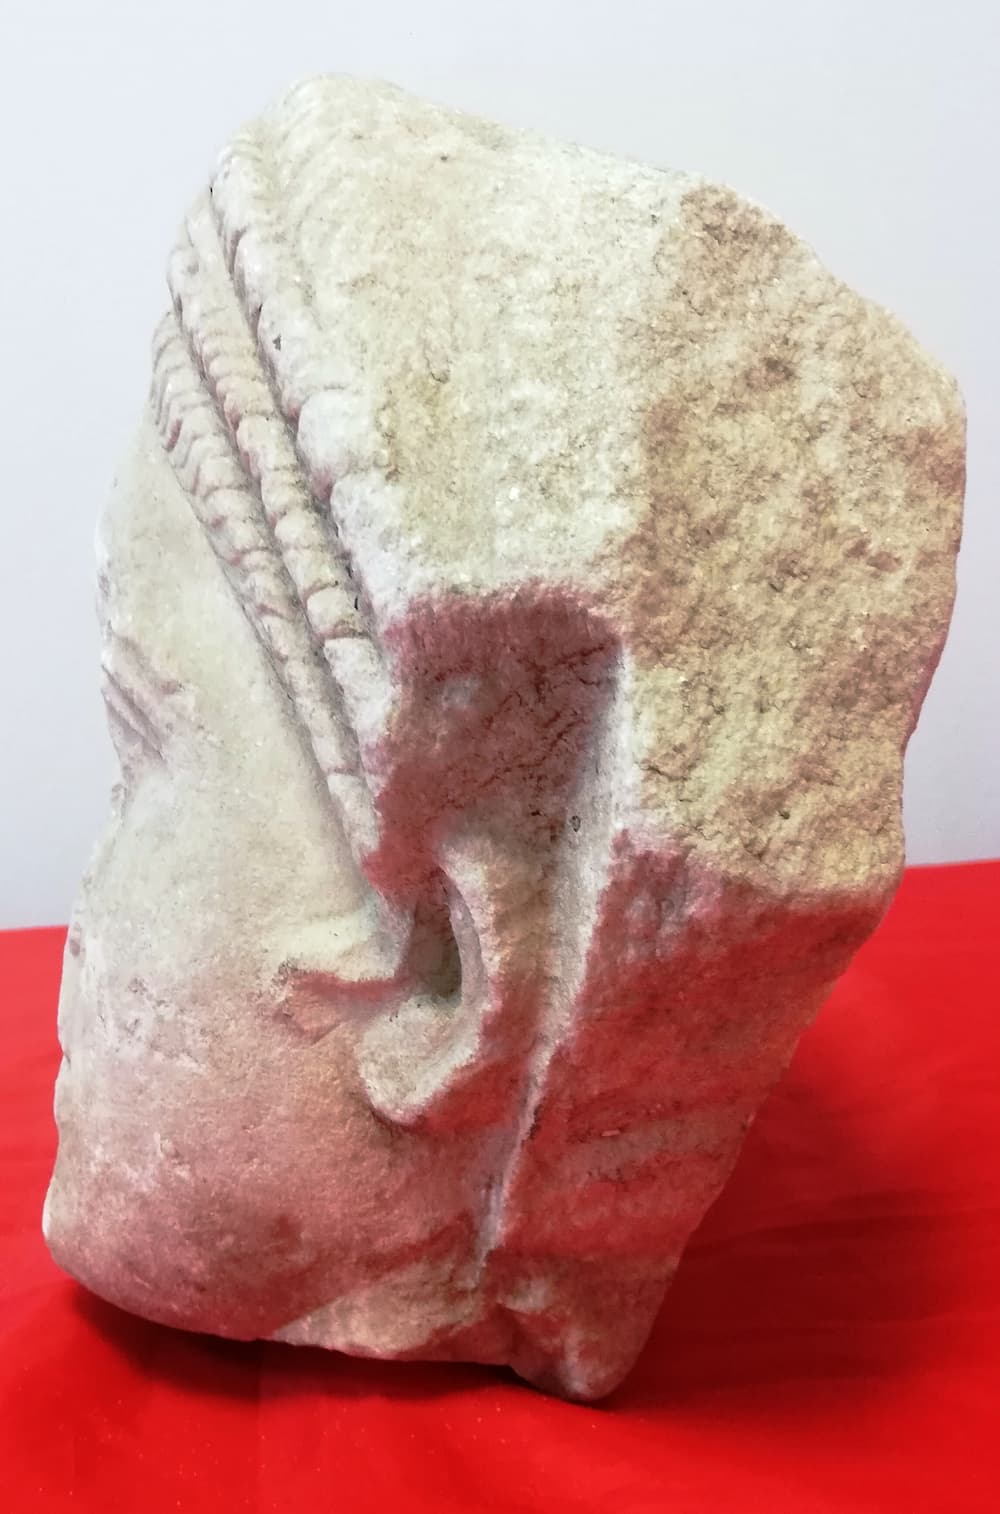 Θεσσαλονίκη: Κεφαλή αρχαίου αγάλματος βρέθηκε σε διαμέρισμα (εικόνες)